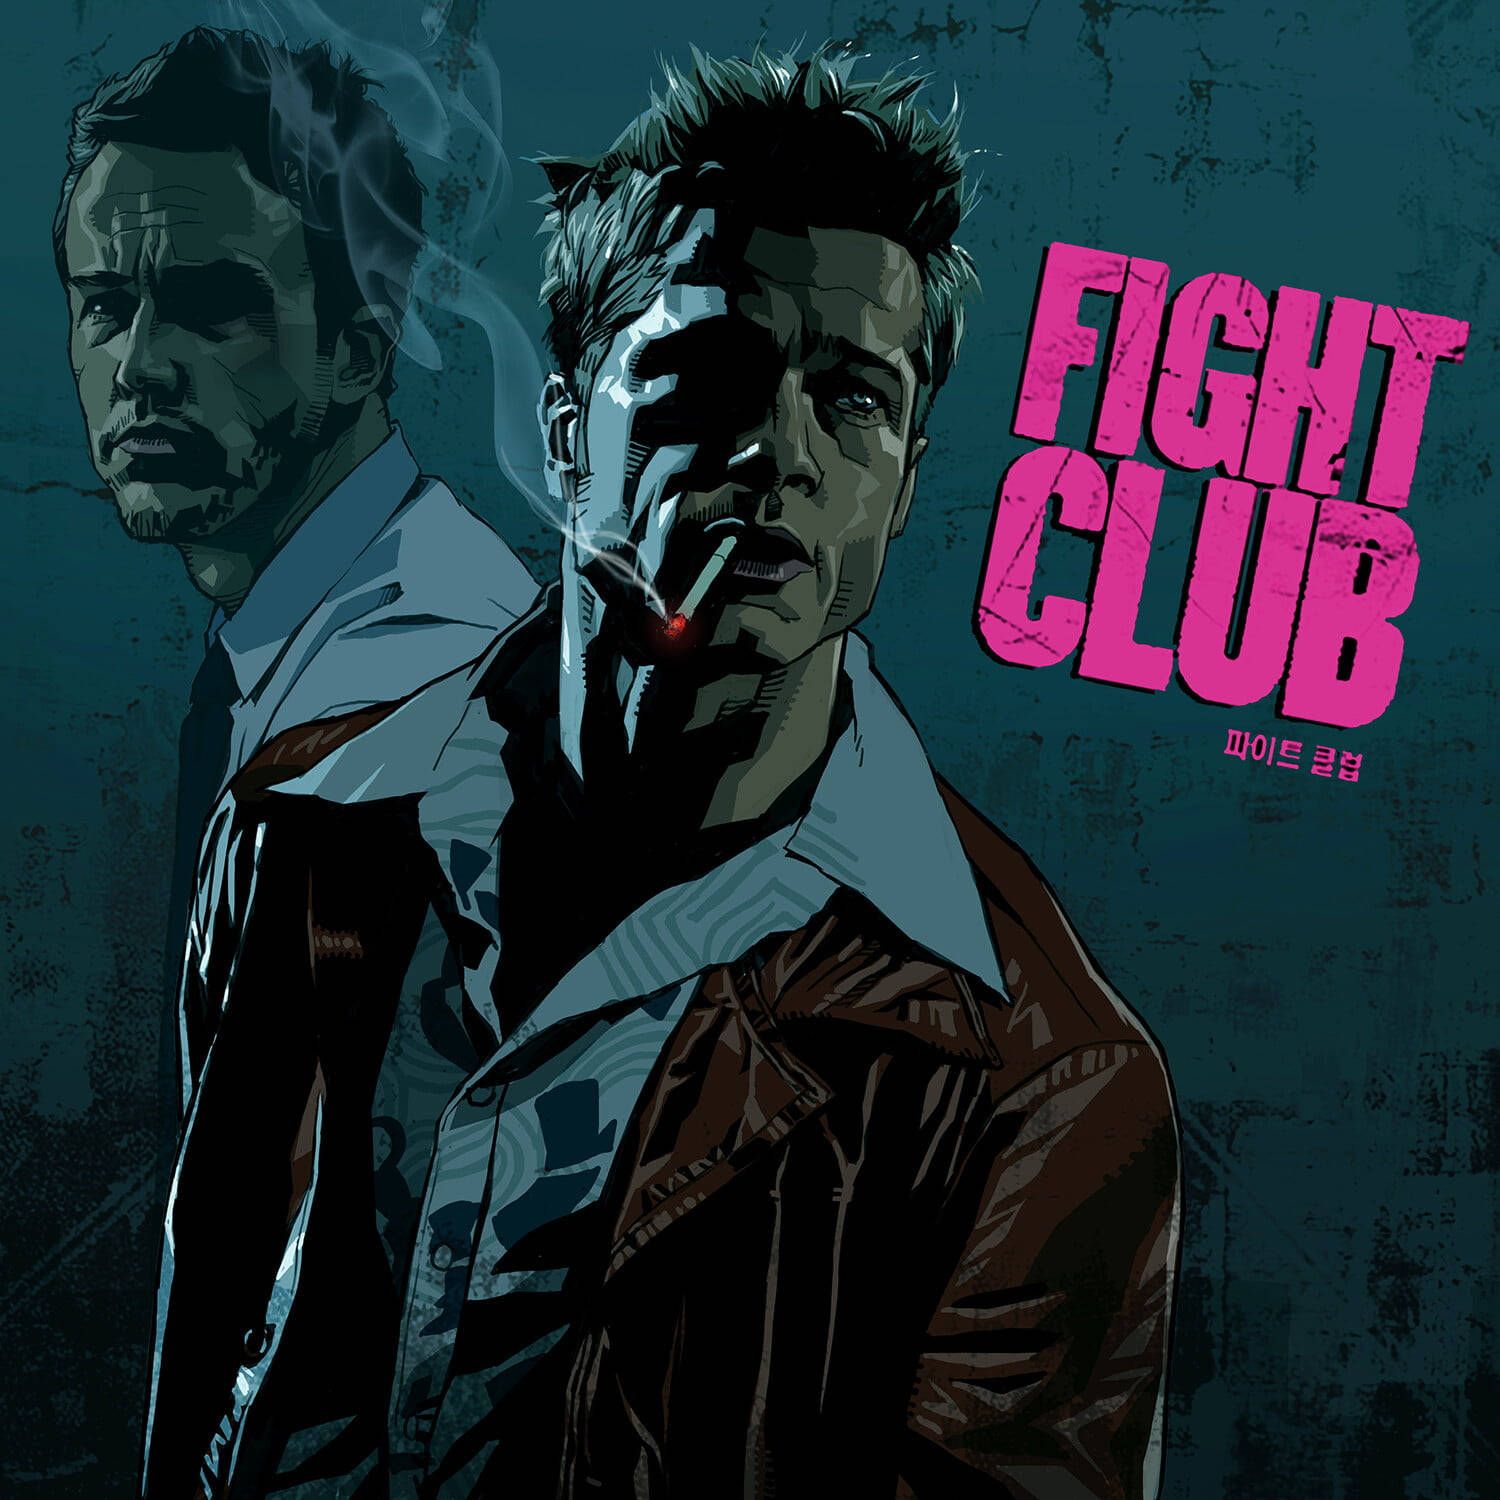 Fight Club Hintergrundbild 1500x1500. Free Fight Club Wallpaper Downloads, Fight Club Wallpaper for FREE